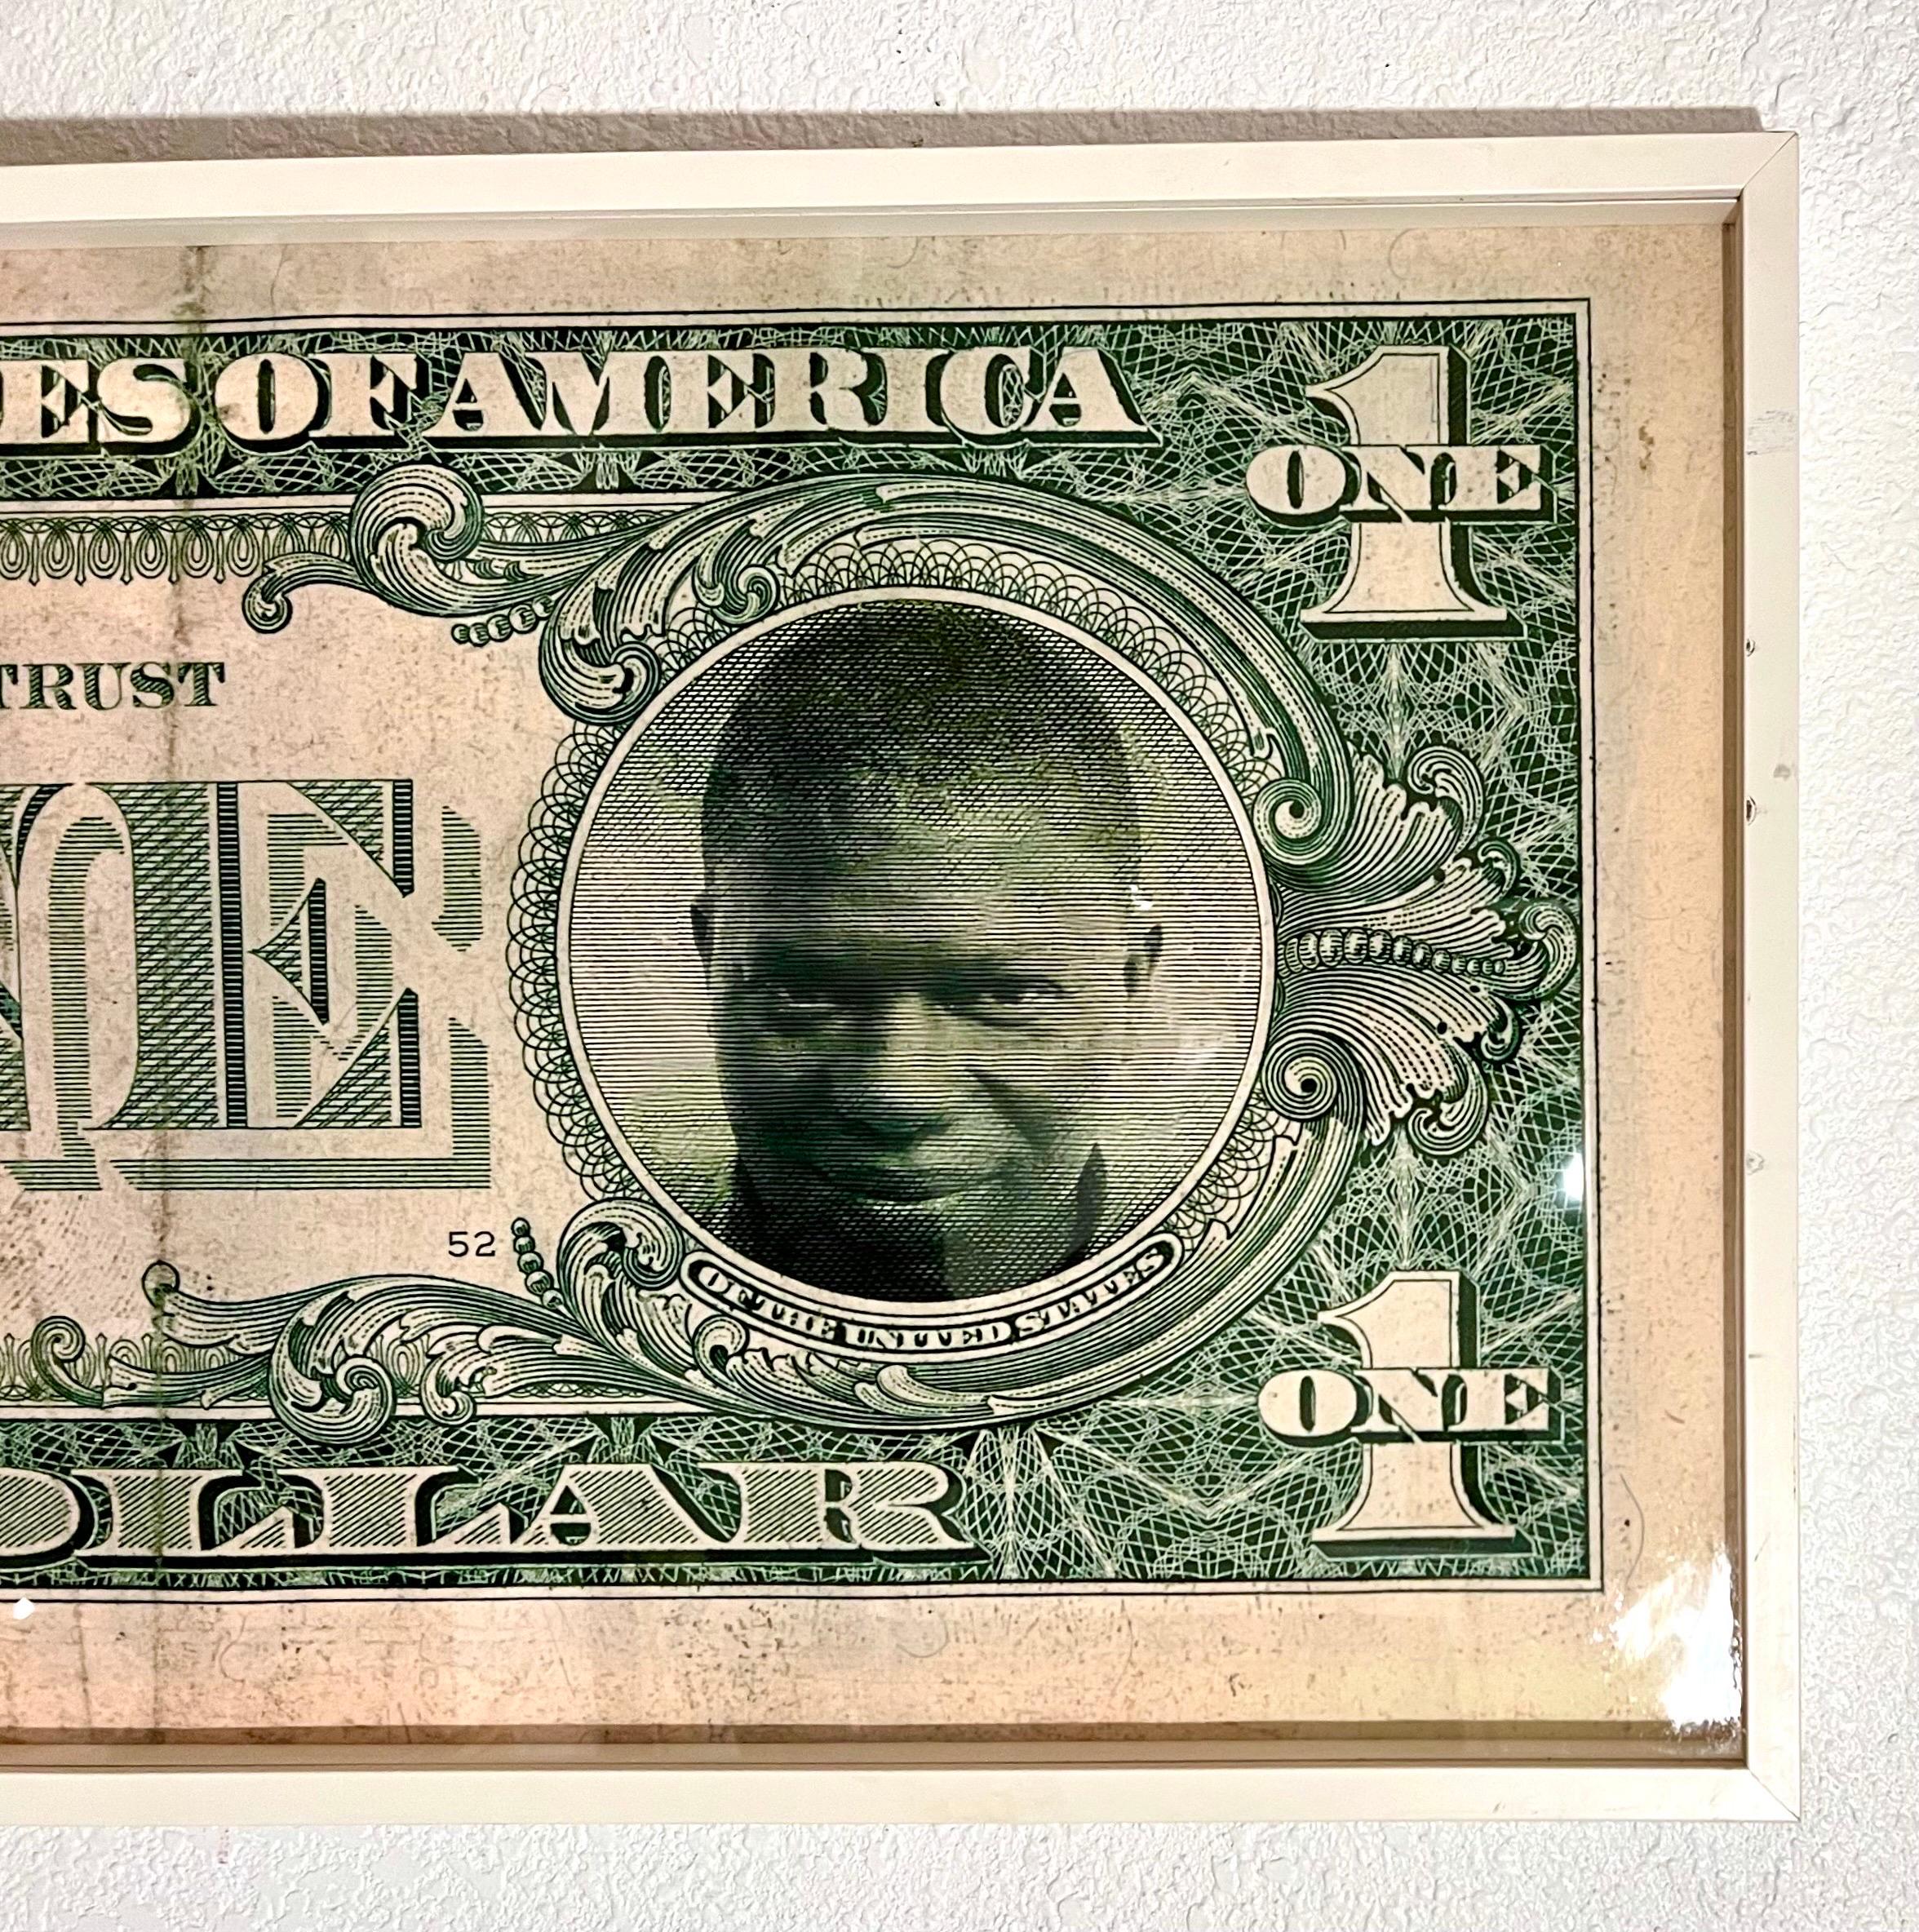 Meschac Gaba Stampa a getto d'inchiostro a pigmenti Fotografia Arte concettuale africana Banconota da un dollaro in vendita 7